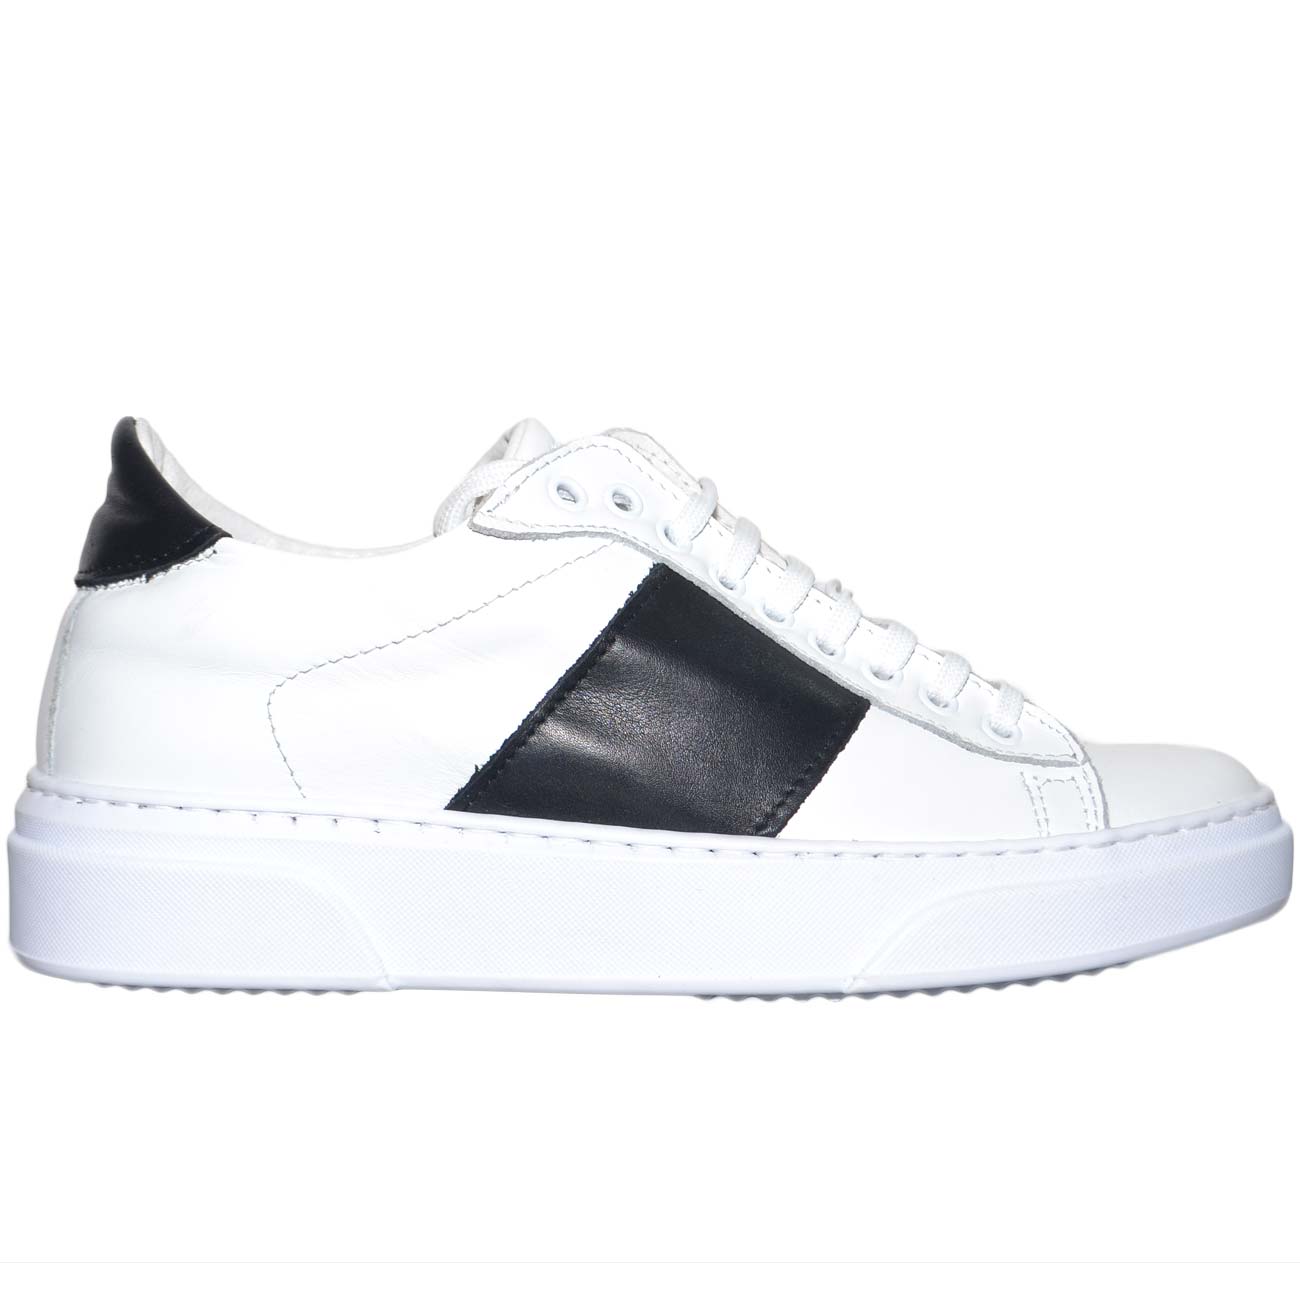 sneakers bassa uomo in vera pelle bianca bicolore nera con striscia fondo  under | eBay